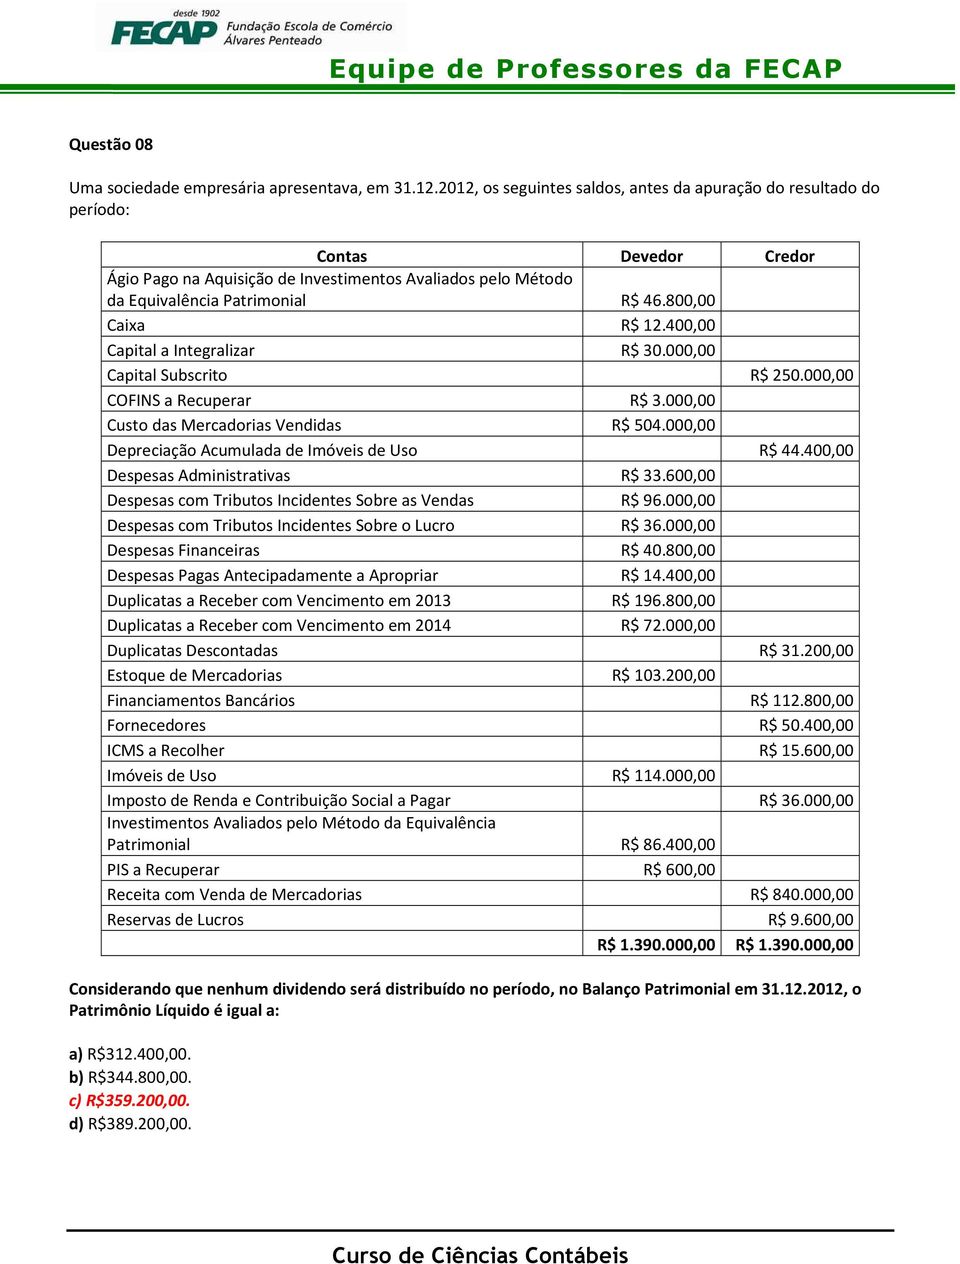 800,00 Caixa R$ 12.400,00 Capital a Integralizar R$ 30.000,00 Capital Subscrito R$ 250.000,00 COFINS a Recuperar R$ 3.000,00 Custo das Mercadorias Vendidas R$ 504.